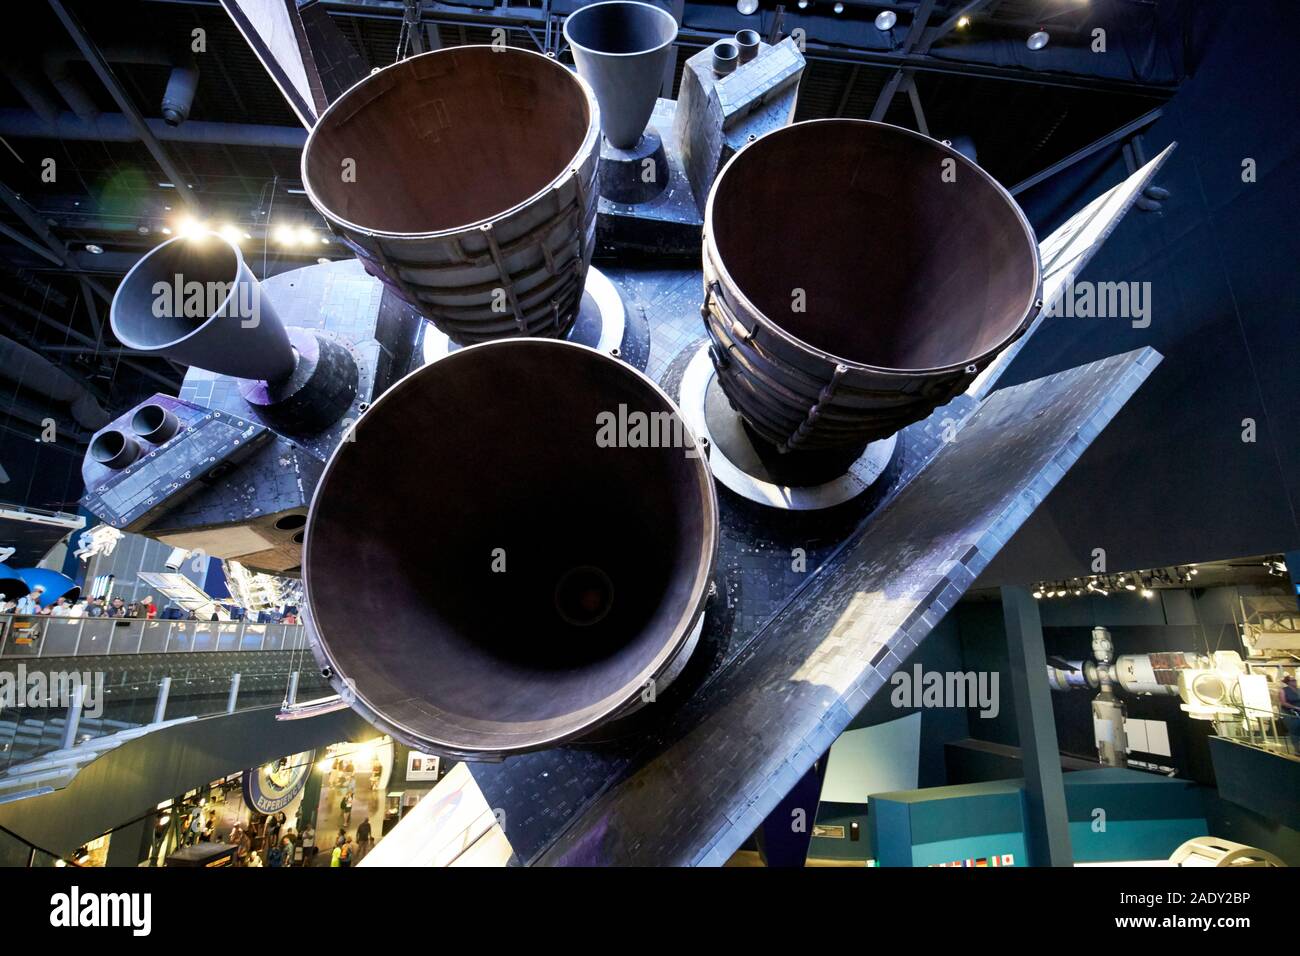 Los motores propulsores y boosters en el transbordador espacial Atlantis en exhibición en el centro espacial Kennedy, Florida, EE.UU. Foto de stock